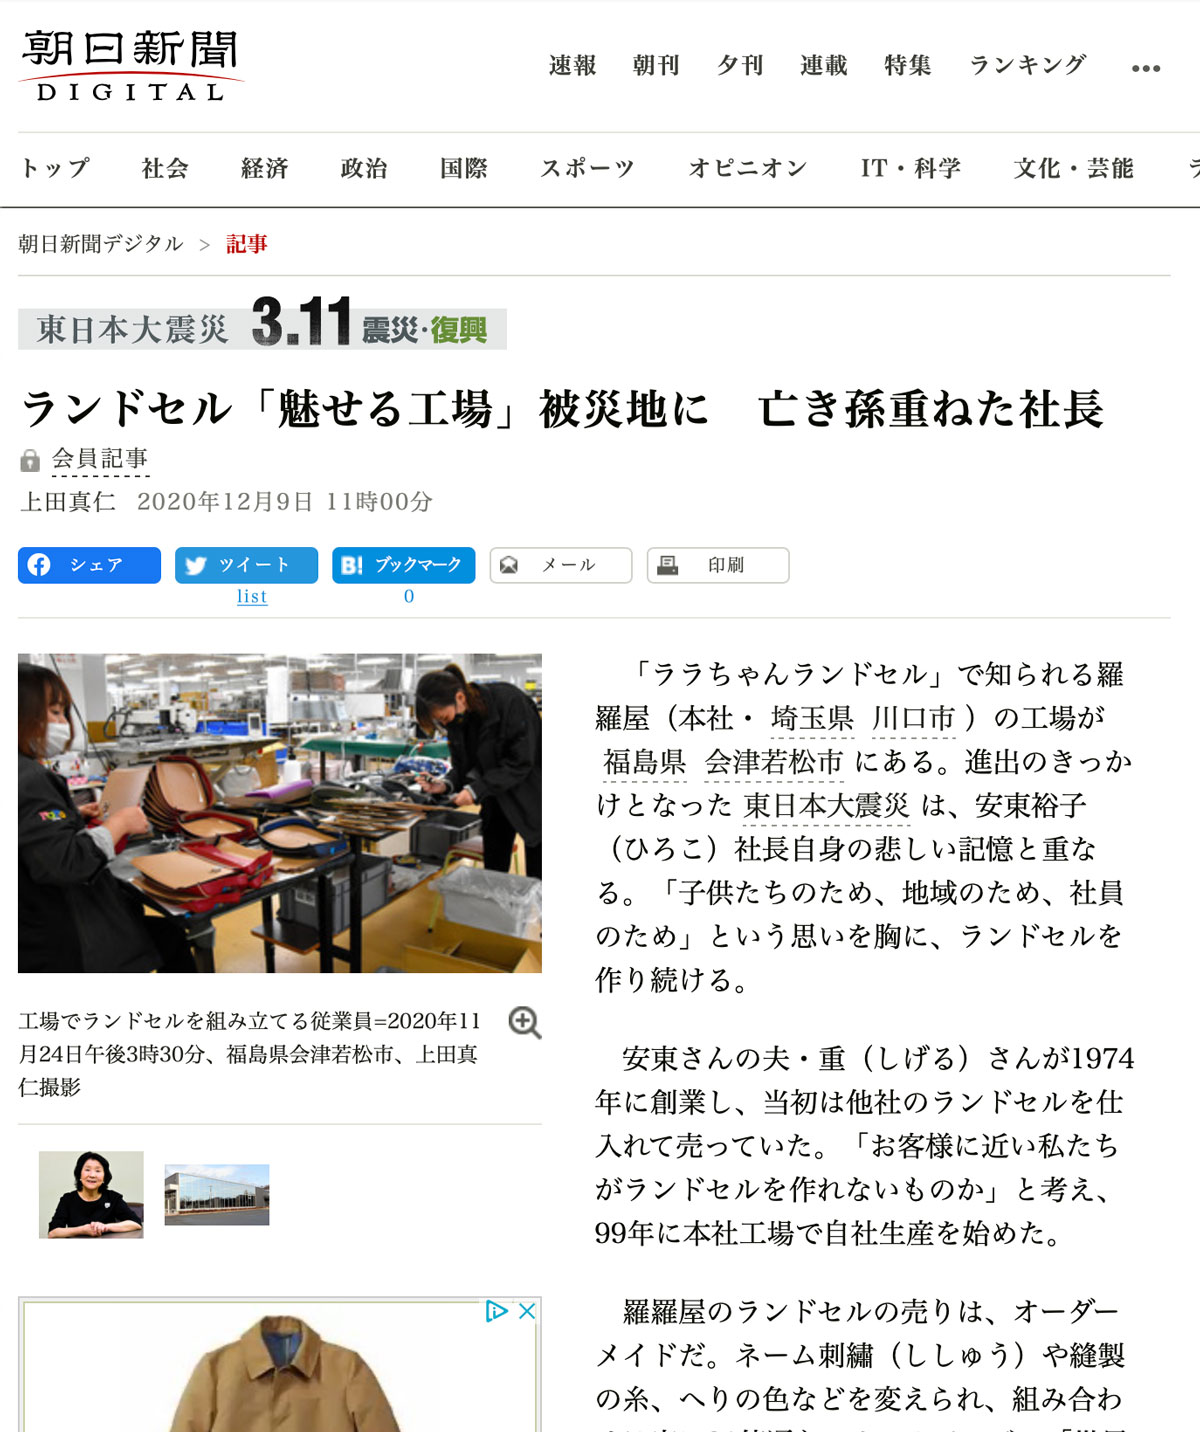 朝日新聞「東日本大震災3.11震災・復興」特集にて掲載されました